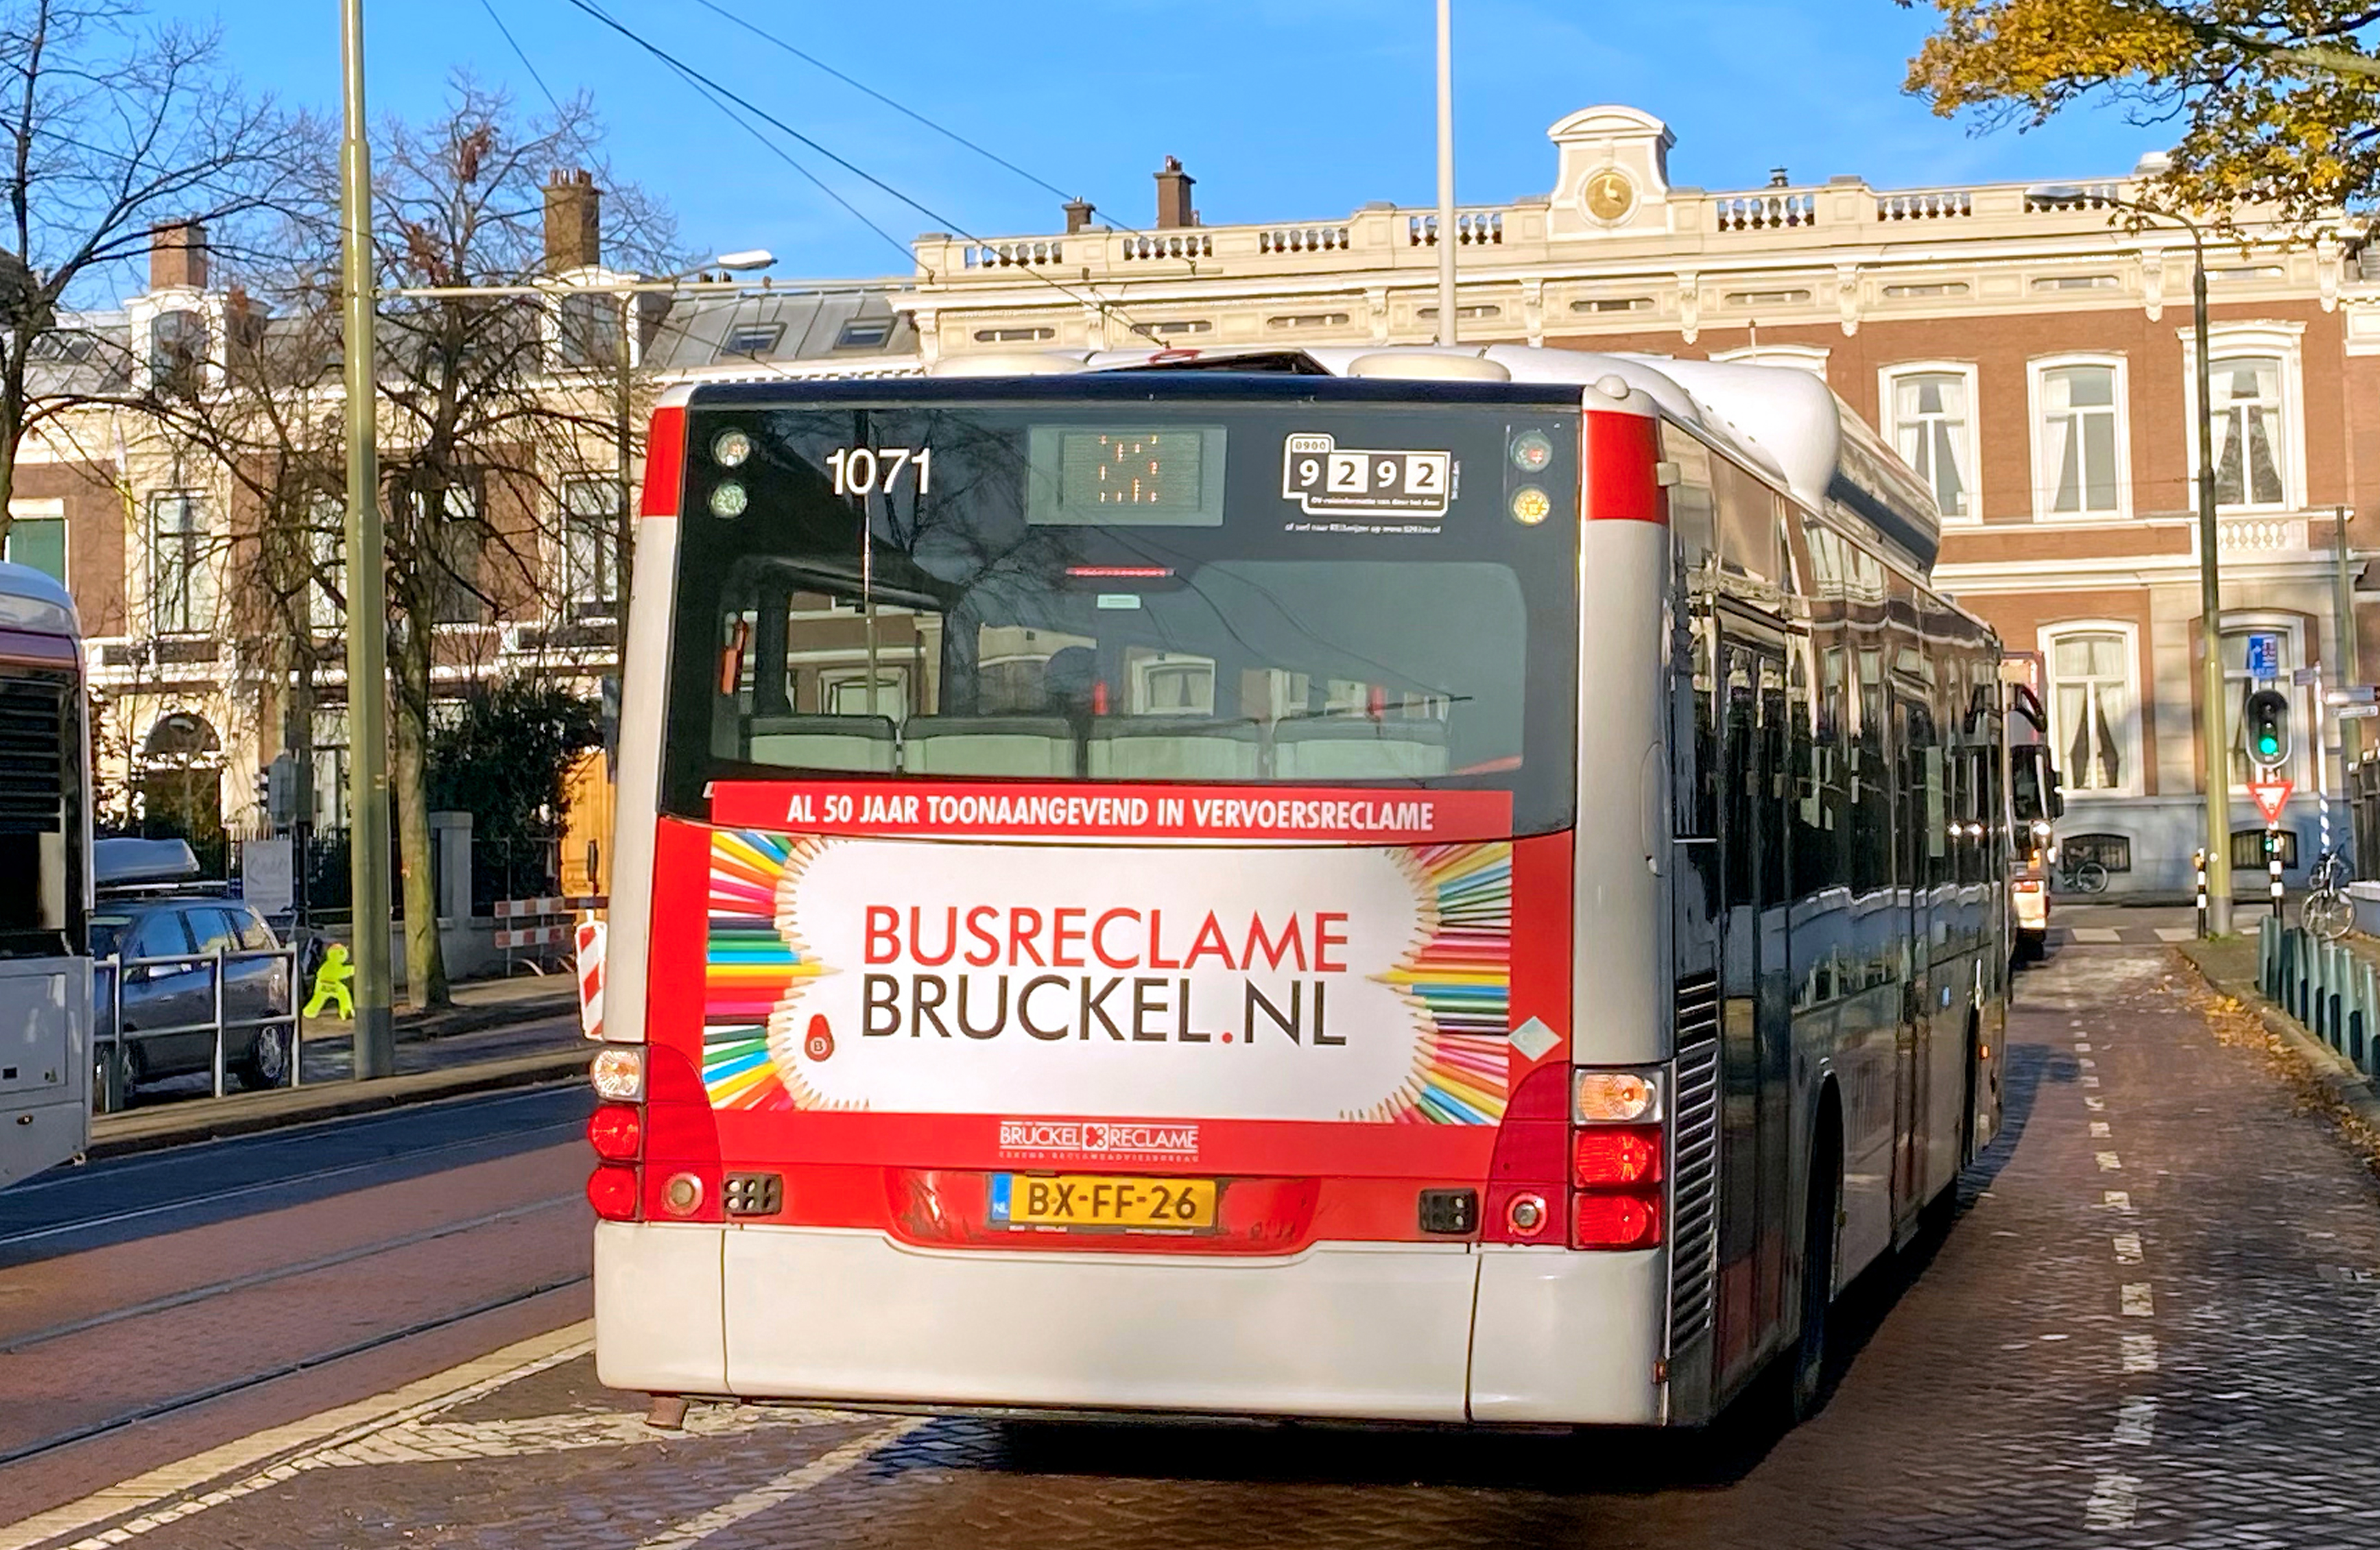 images/bruckel/images/bruckel-bus-2019.jpg